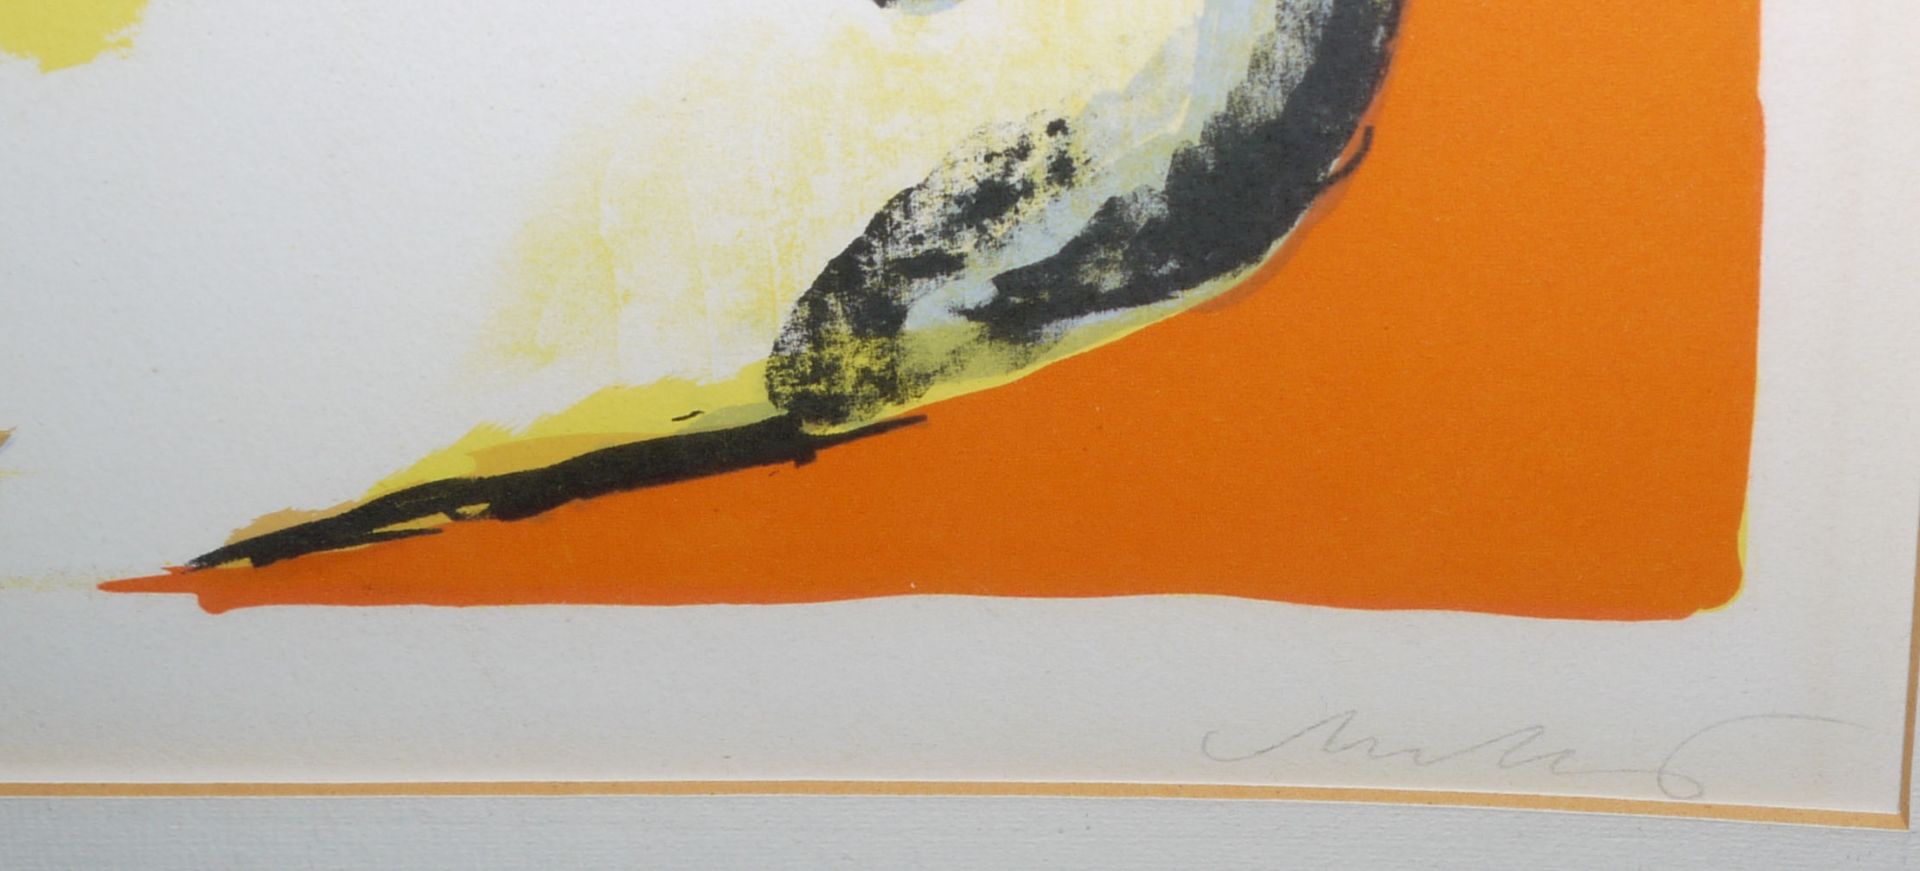 Horst Antes, "Bildnis des Aesop", Farblithographie von 1967, signiert, in Galerierahmung - Bild 2 aus 2